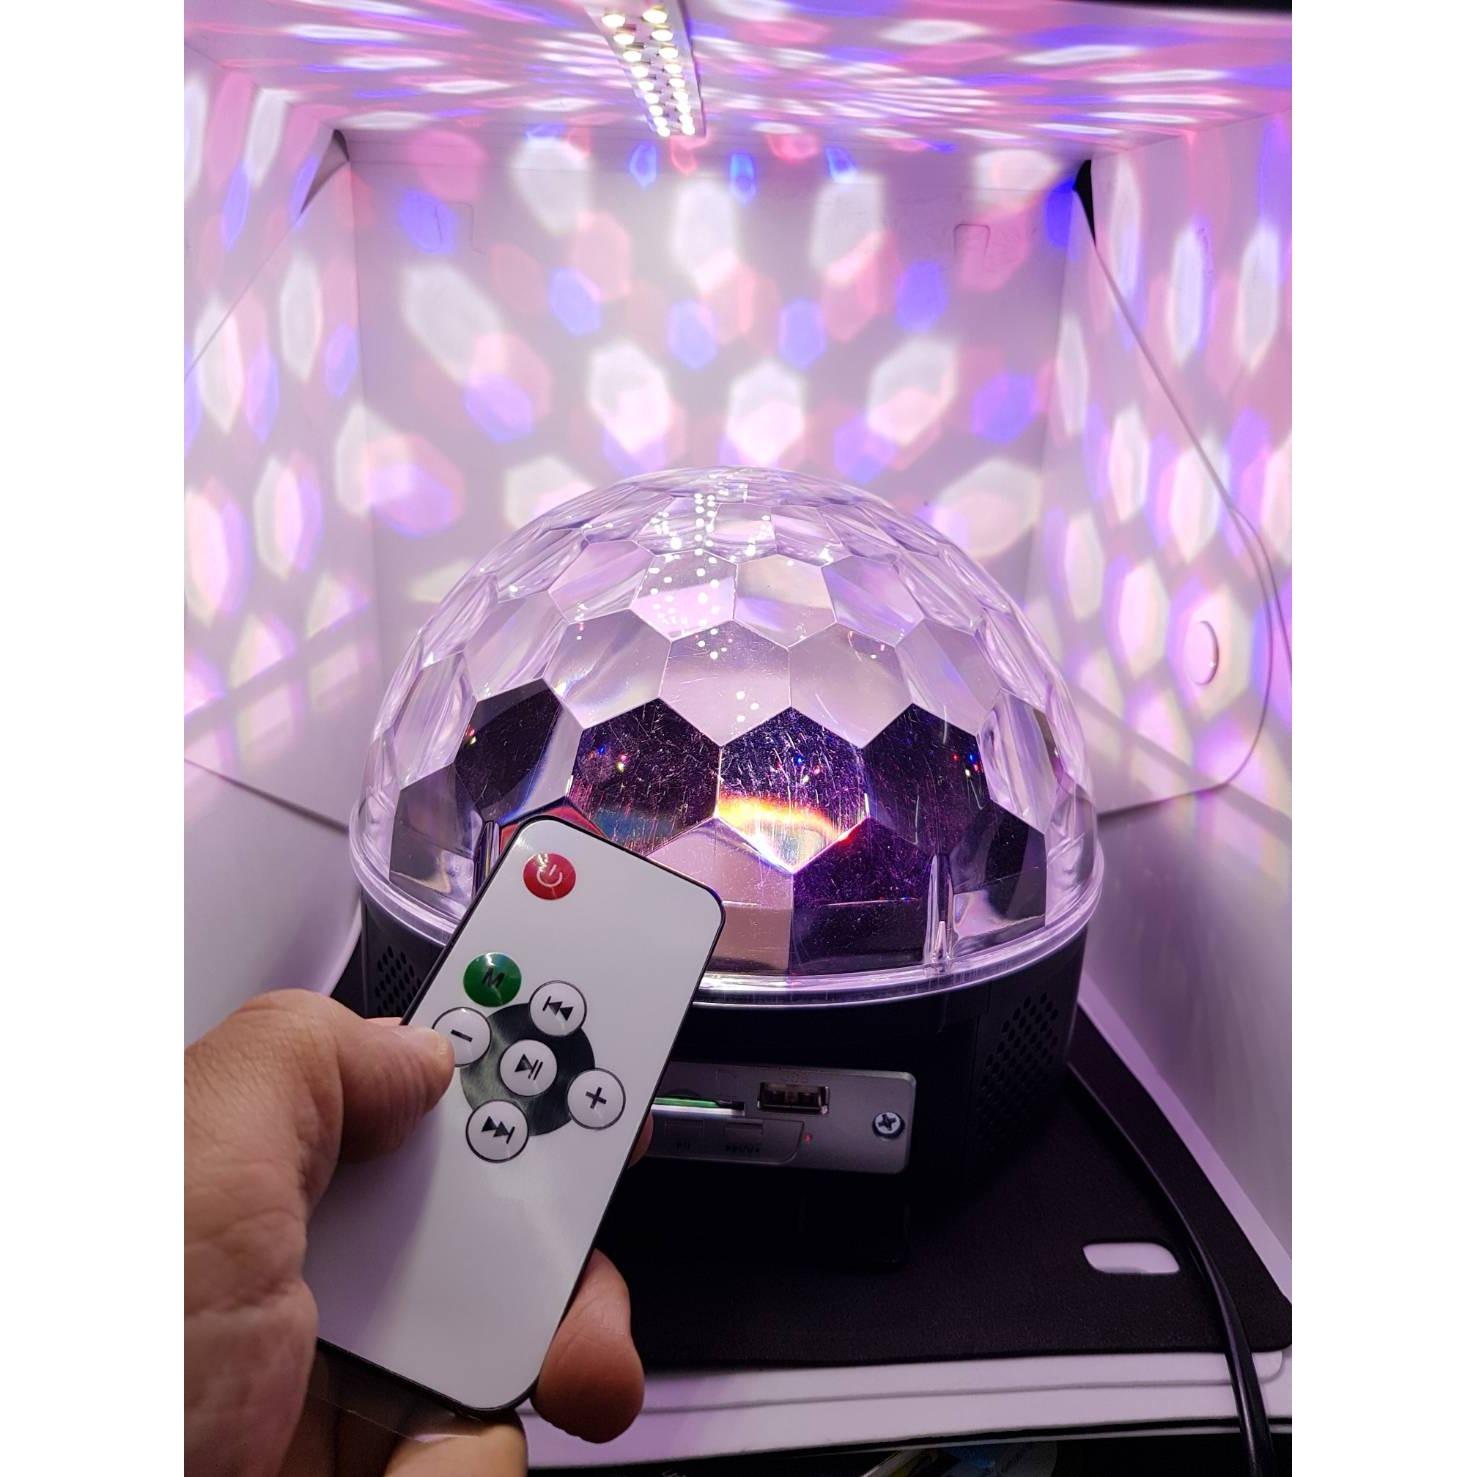 ไฟดิสโก้เทค ไฟเทค ไฟเธค ไฟดิสโก้ ไฟปาร์ตี้ เล่นเพลงได้ LED Magic Ball Light MP3